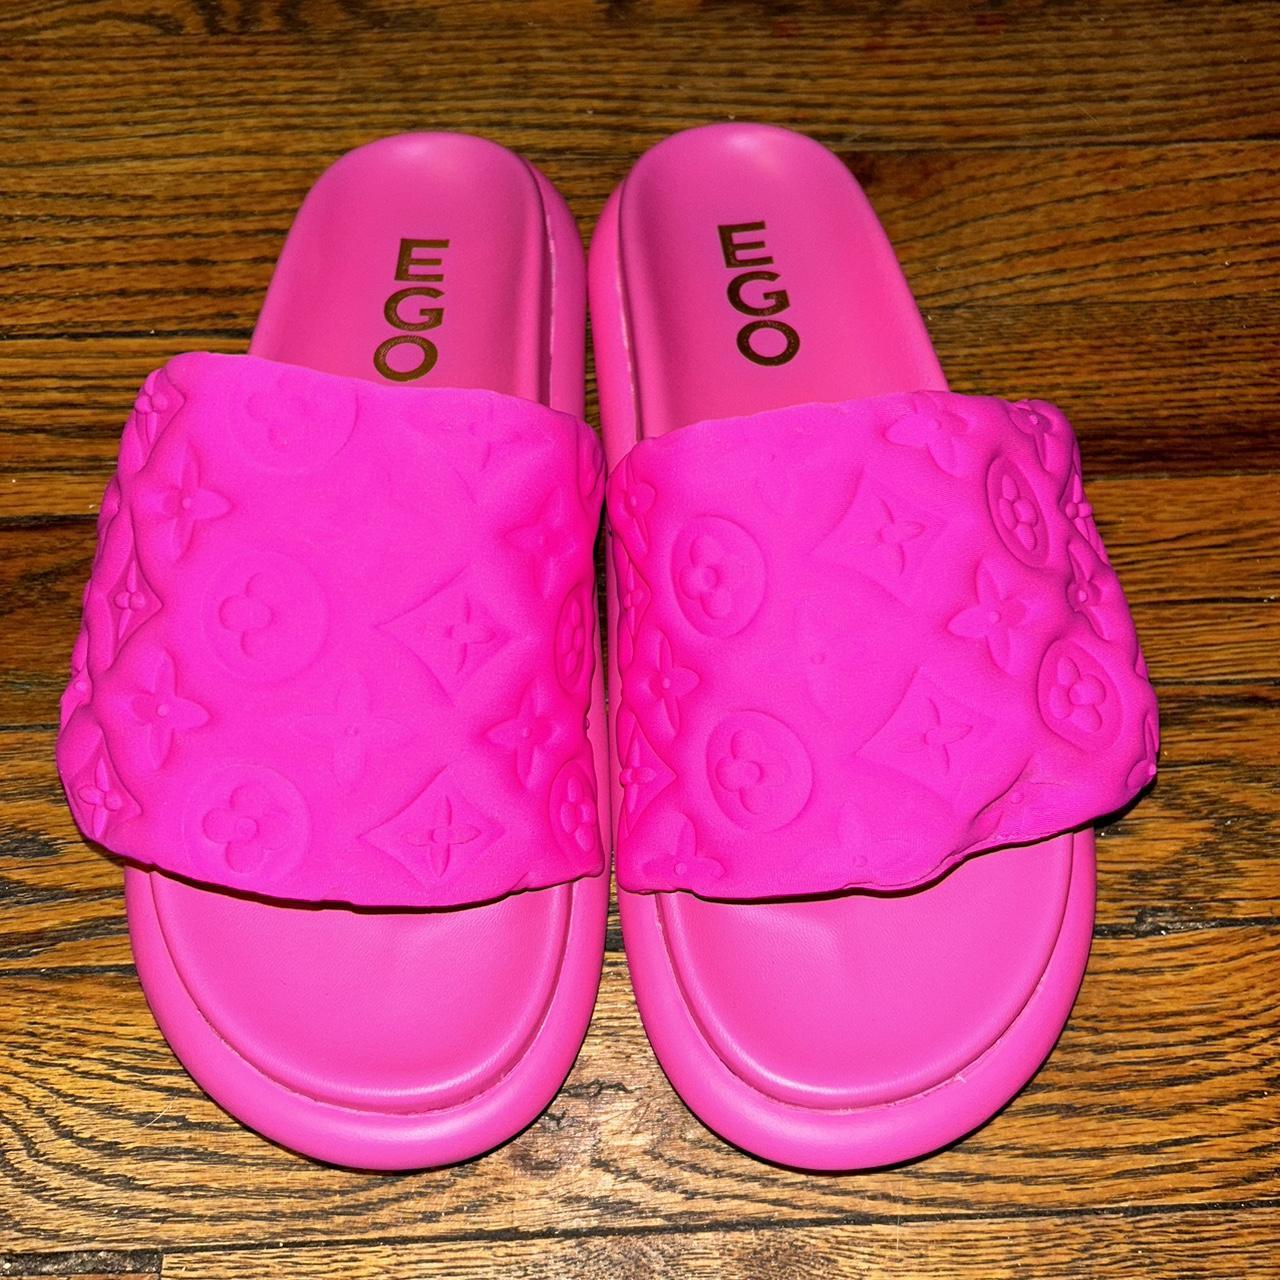 Ego Shoes Pink Slides - Depop